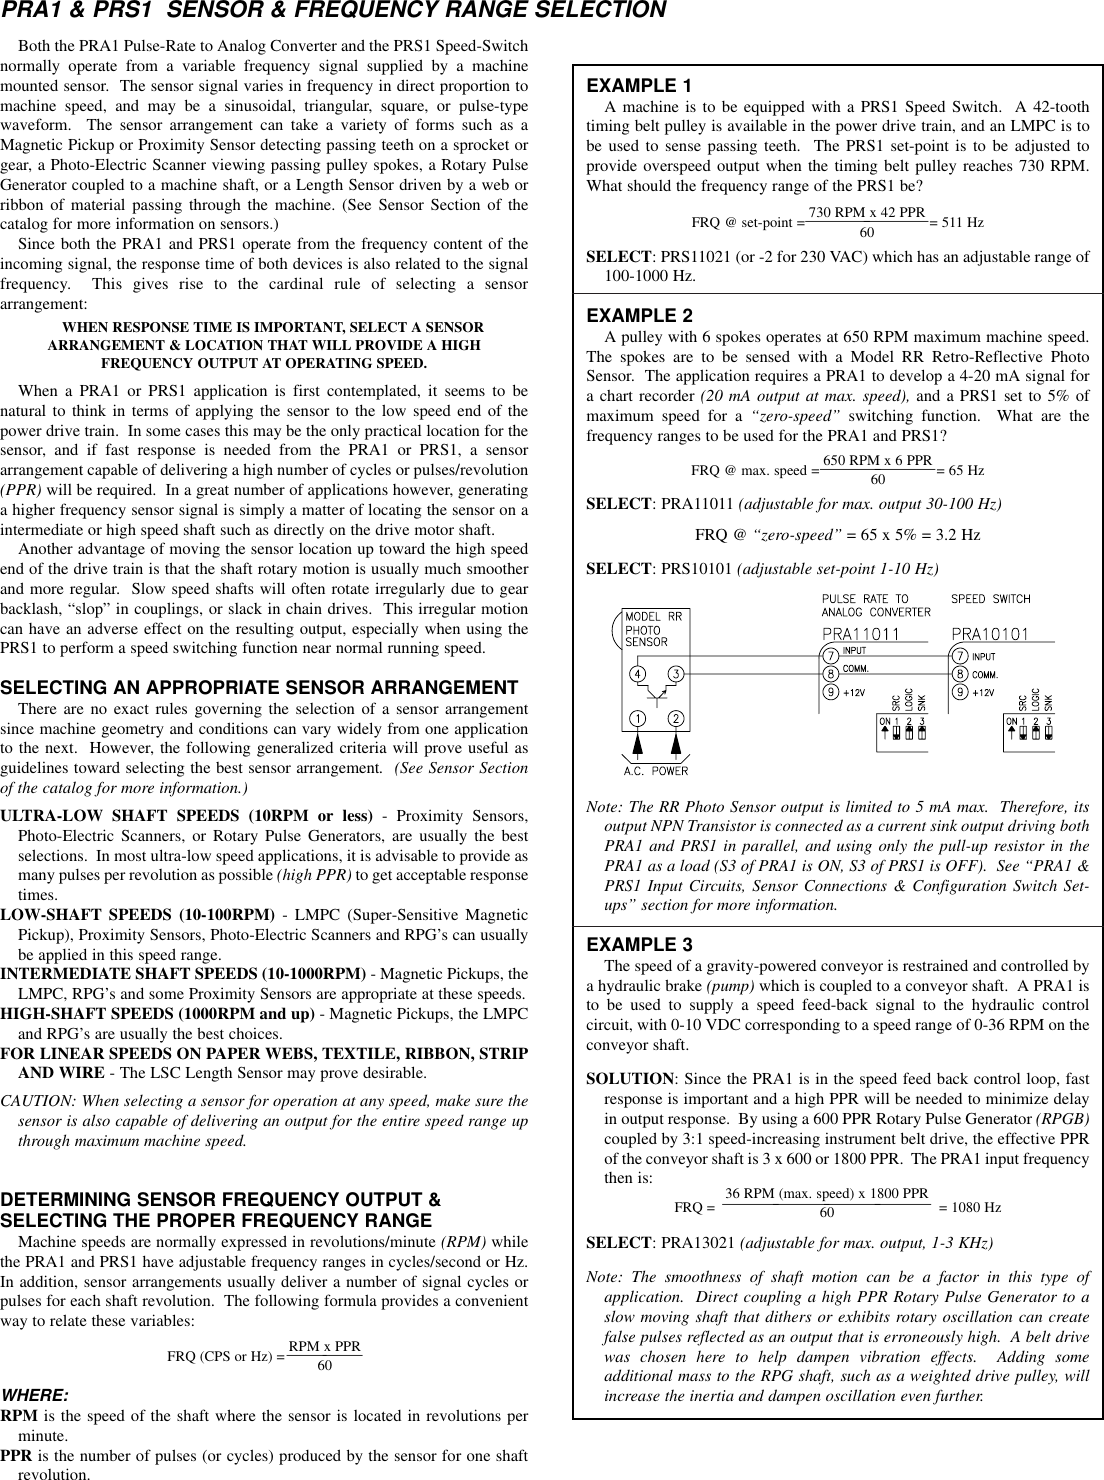 Page 4 of 4 - PRA1 Data Sheet/Manual PDF